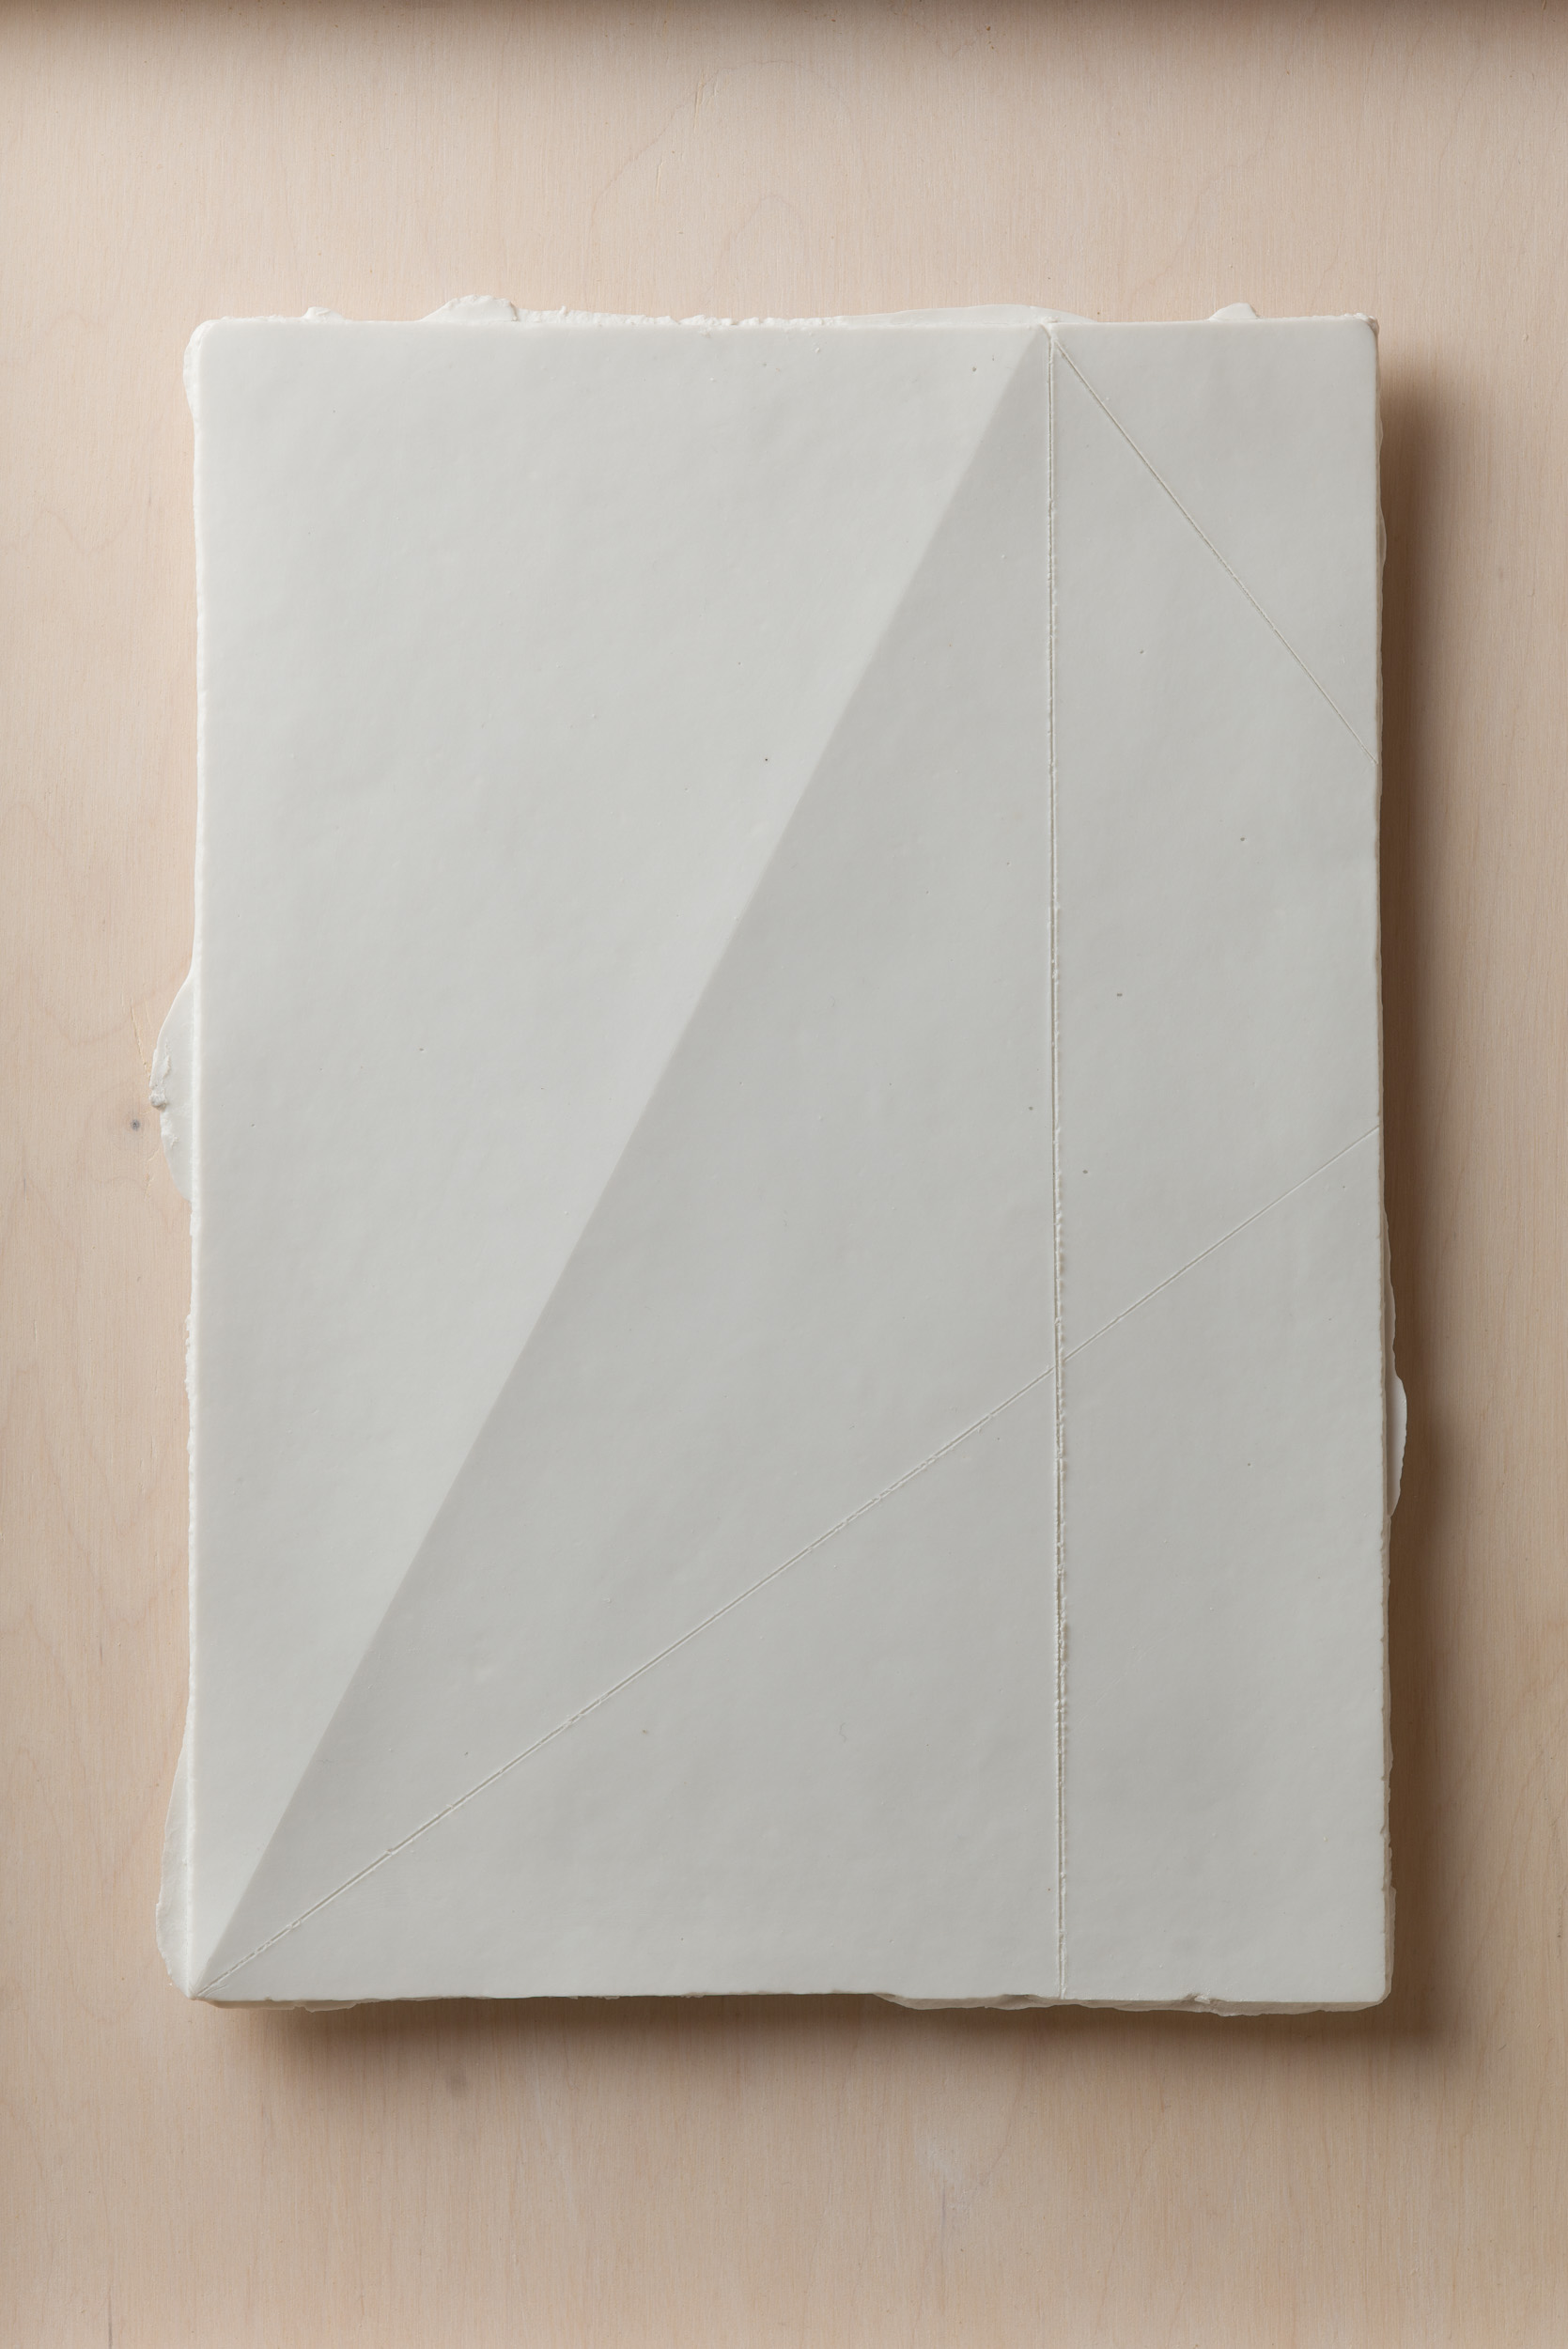 NÉMA Júlia: A4 II/III (2019) papírporcelán / paperporcelain 18,5 x 26 cm (31,6 x 38,6 x 3,5 cm) fotó: Czigány Ákos